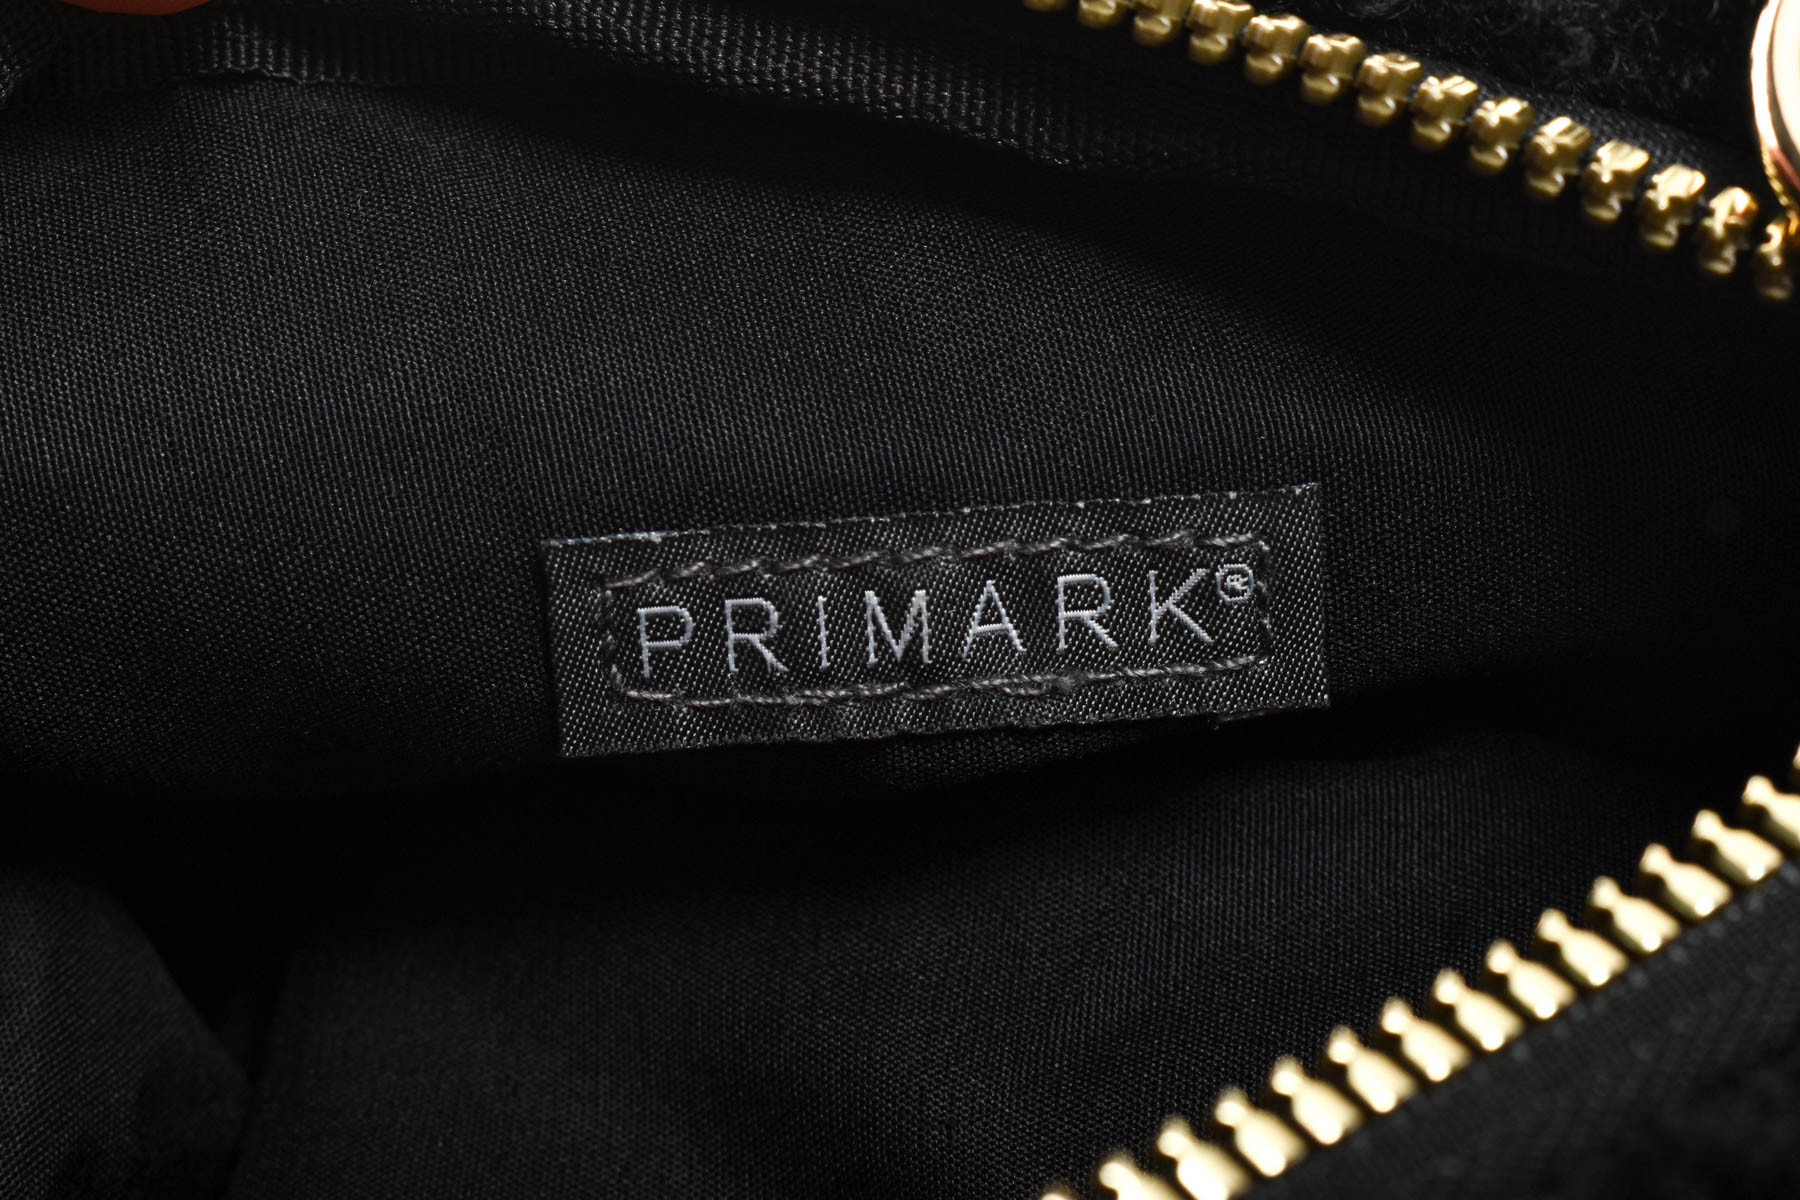 Γυναικεία τσάντα - PRIMARK - 3